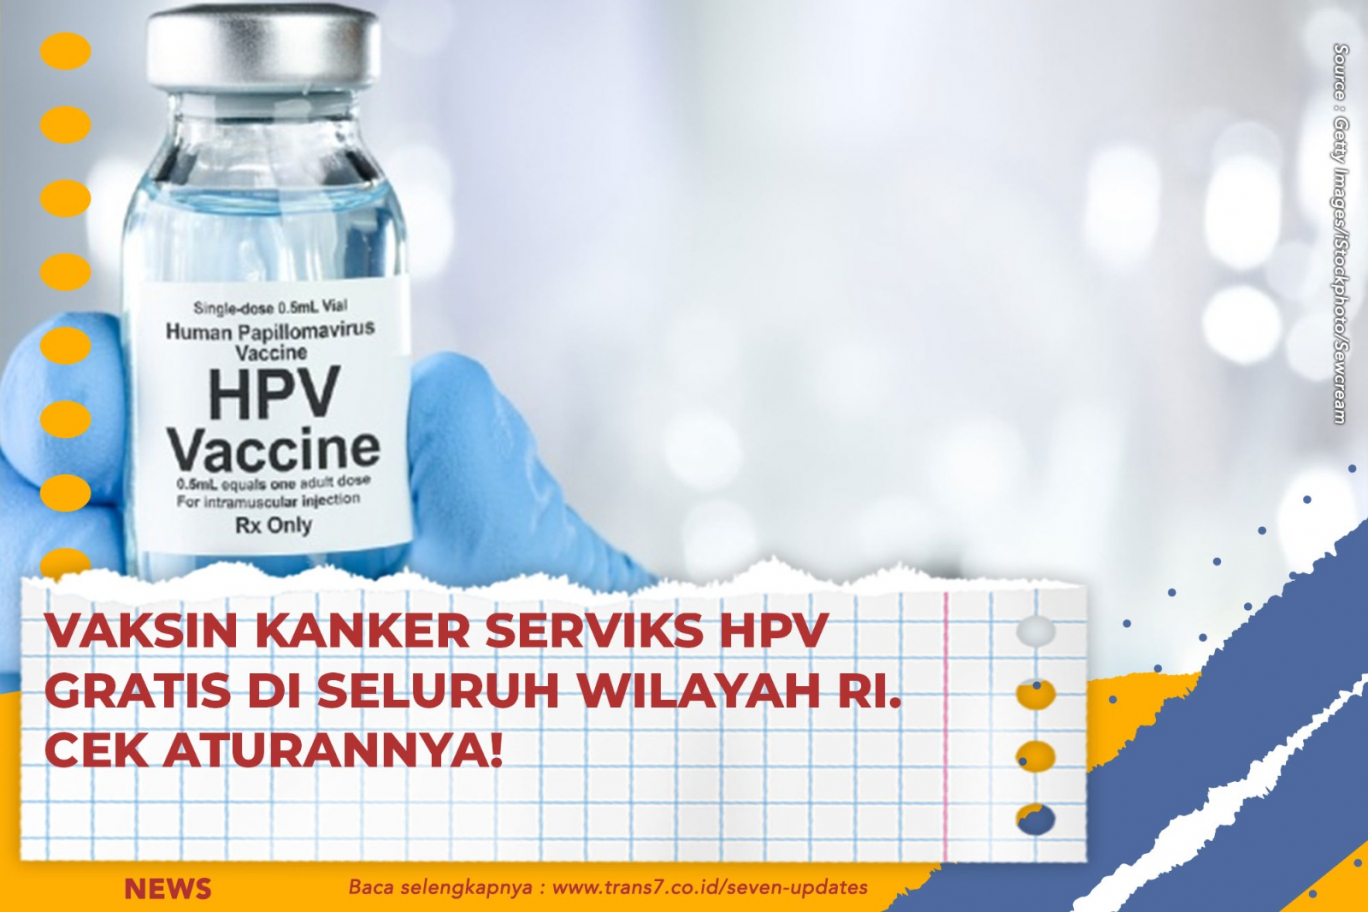 Vaksin Kanker Serviks HPV Gratis Di Seluruh Wilayah RI. Cek Aturannya!